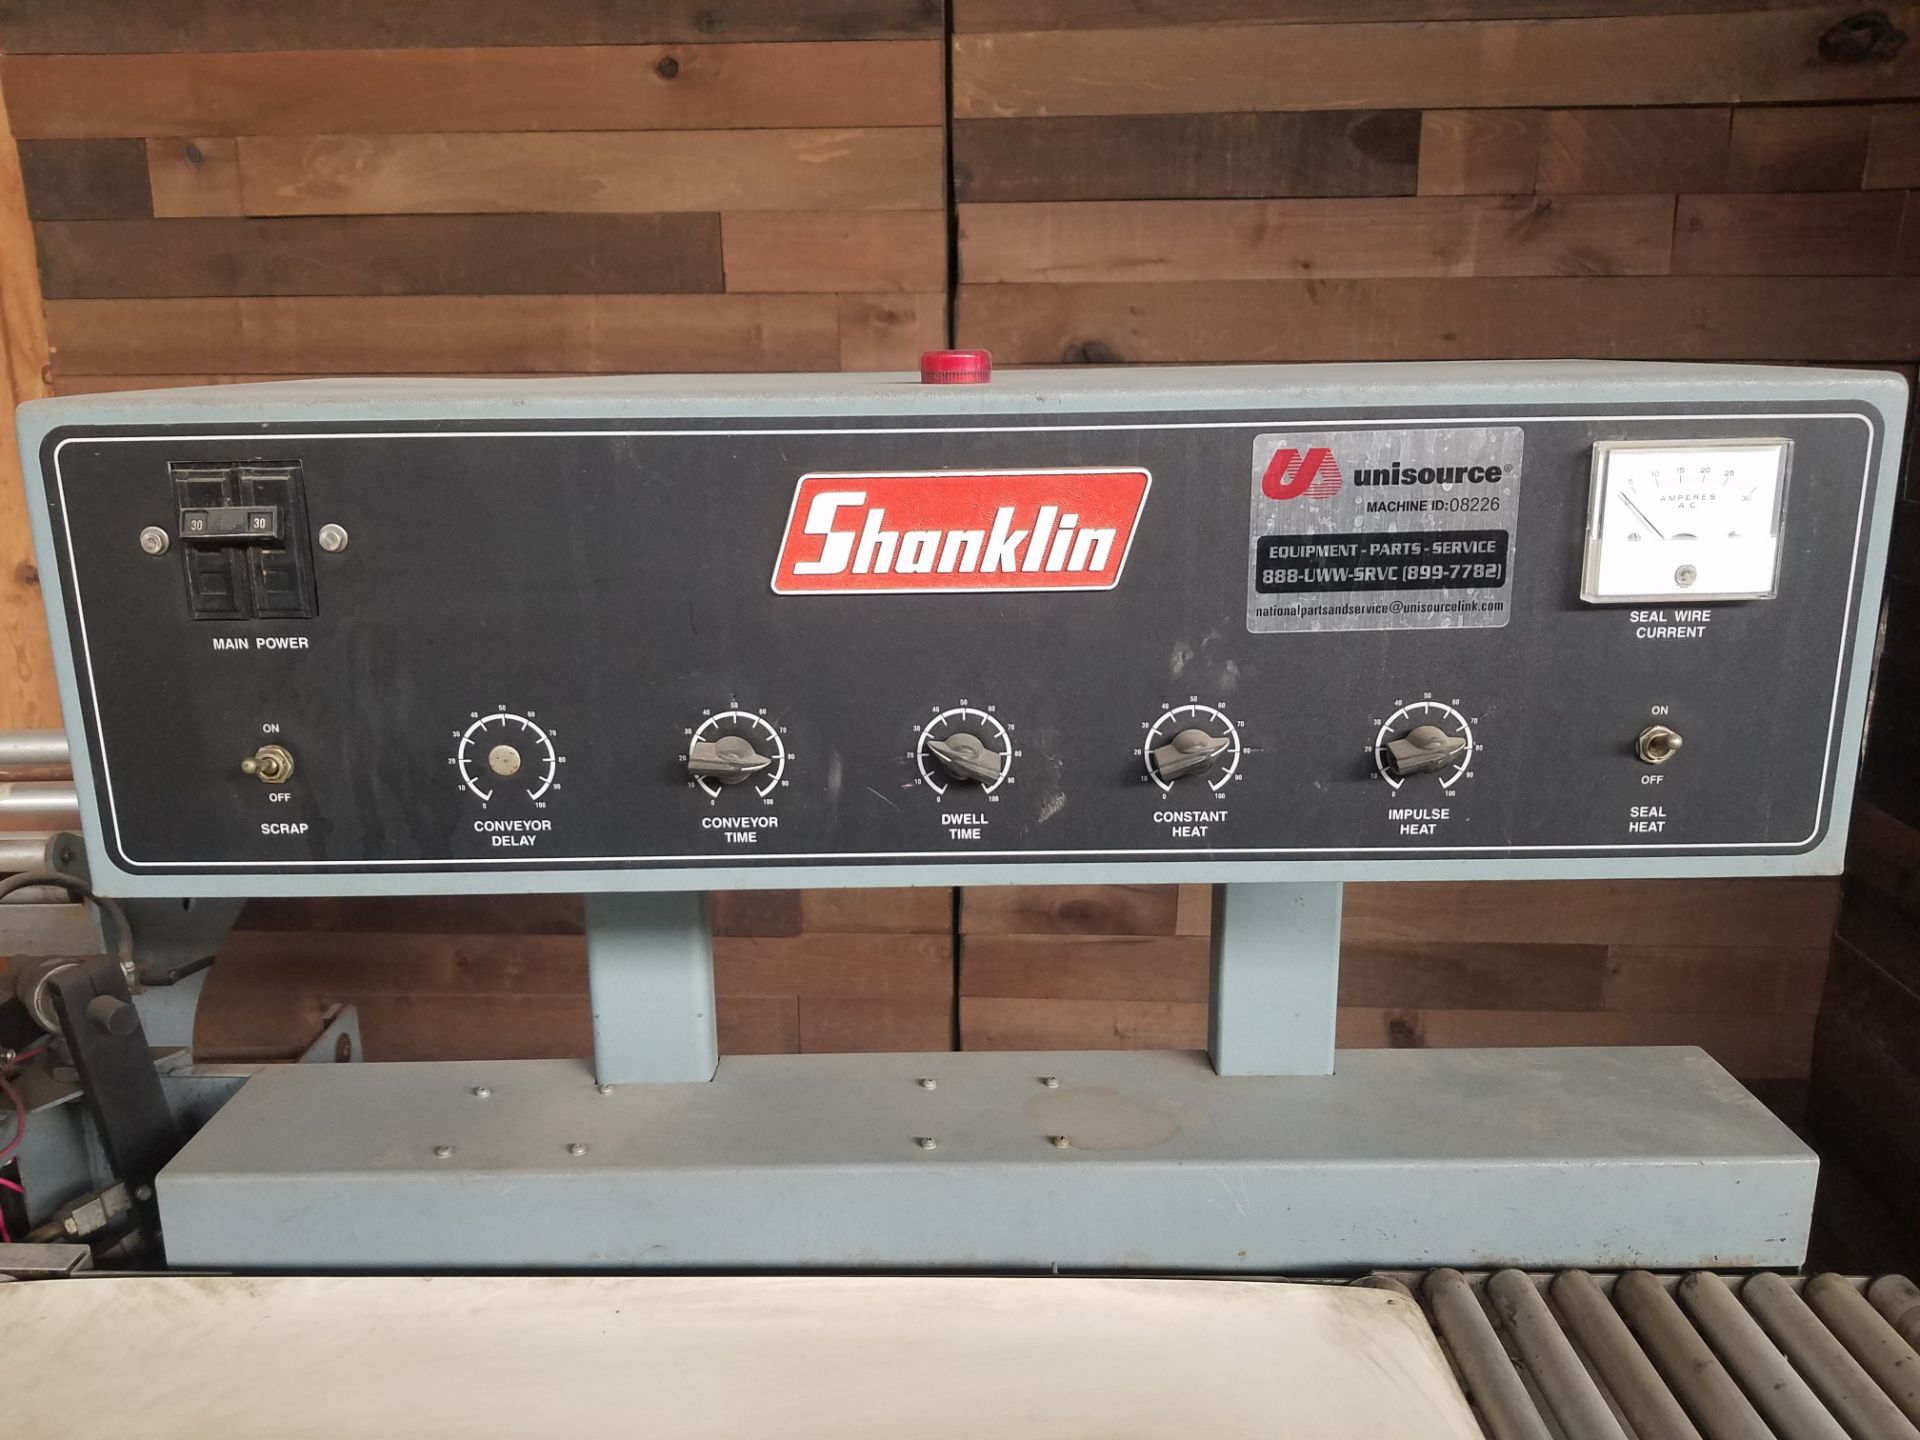 Shanklin T-7XL Heat Sealer, S/N 50020, Volt 208, Single Phase (Loading, Rigging & Site Management - Image 4 of 5